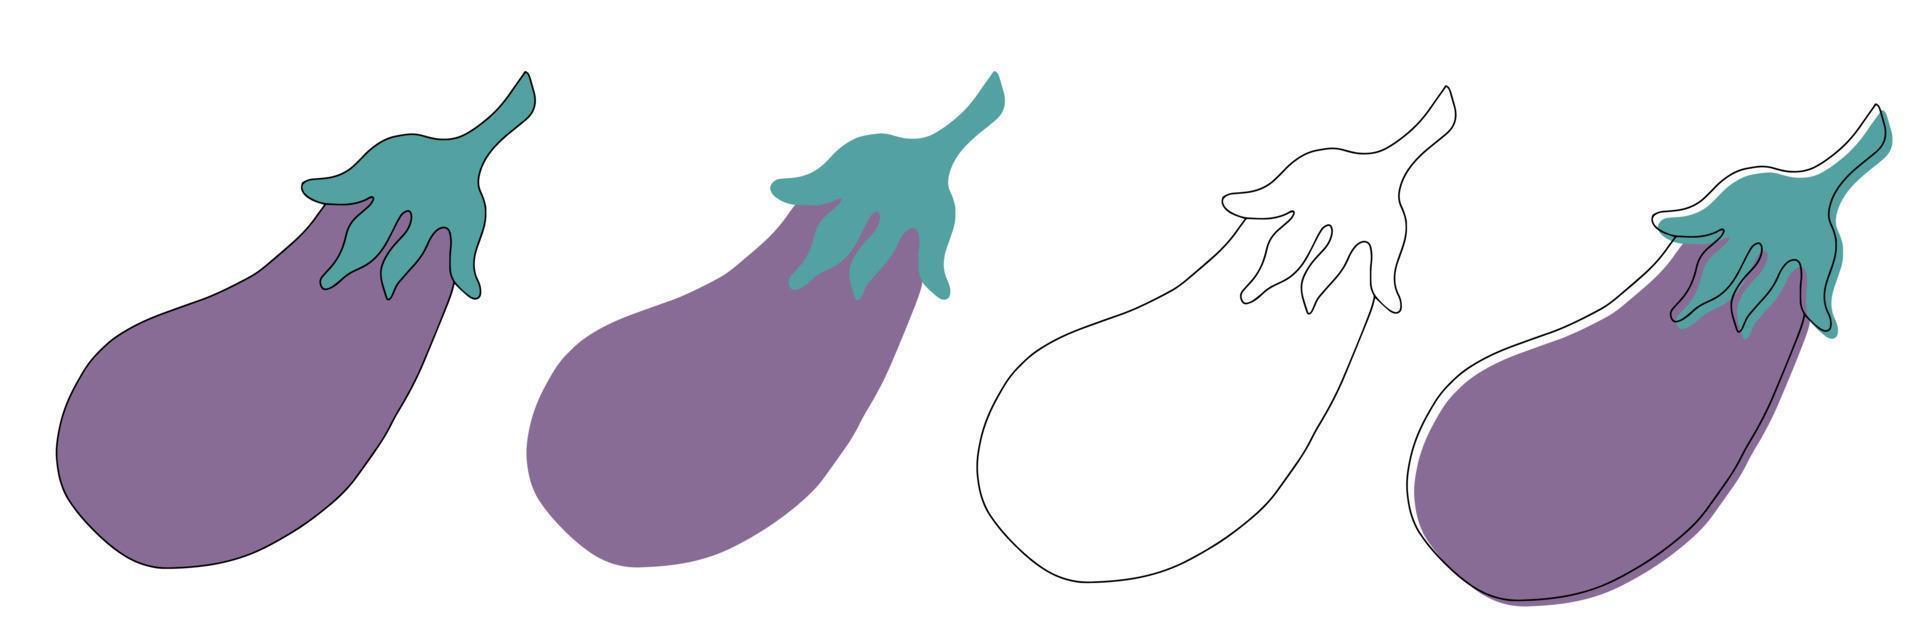 Aubergine vegetable, eggplant isolated sketch. Vector purple vegetable, whole brinjal edible fruit. Cartoon eggplant